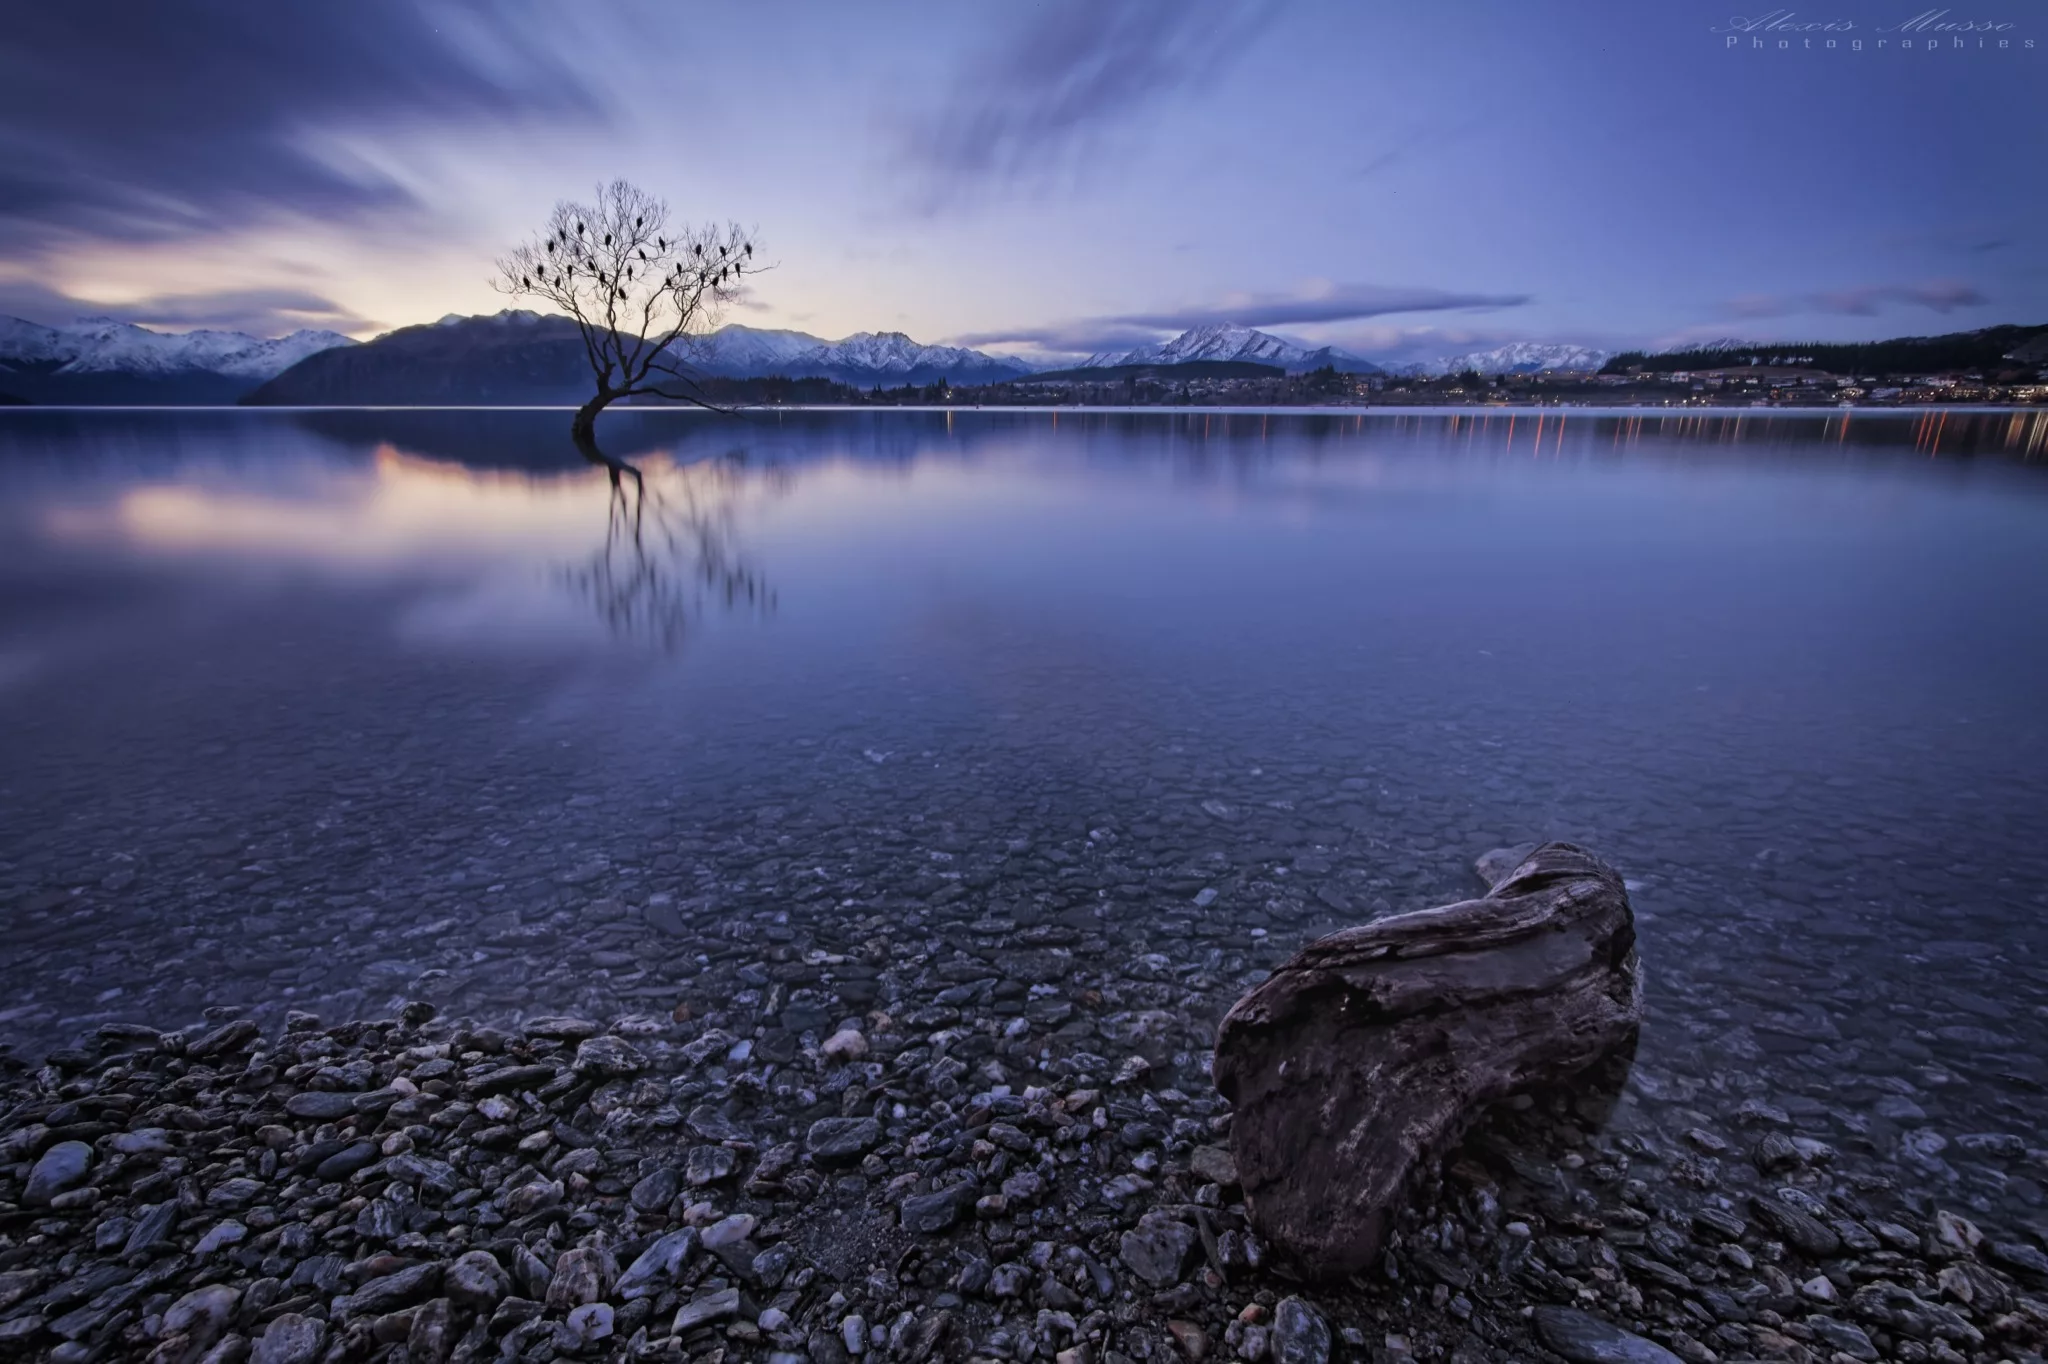 Lake Wanaka - The Alone Tree, New Zealand